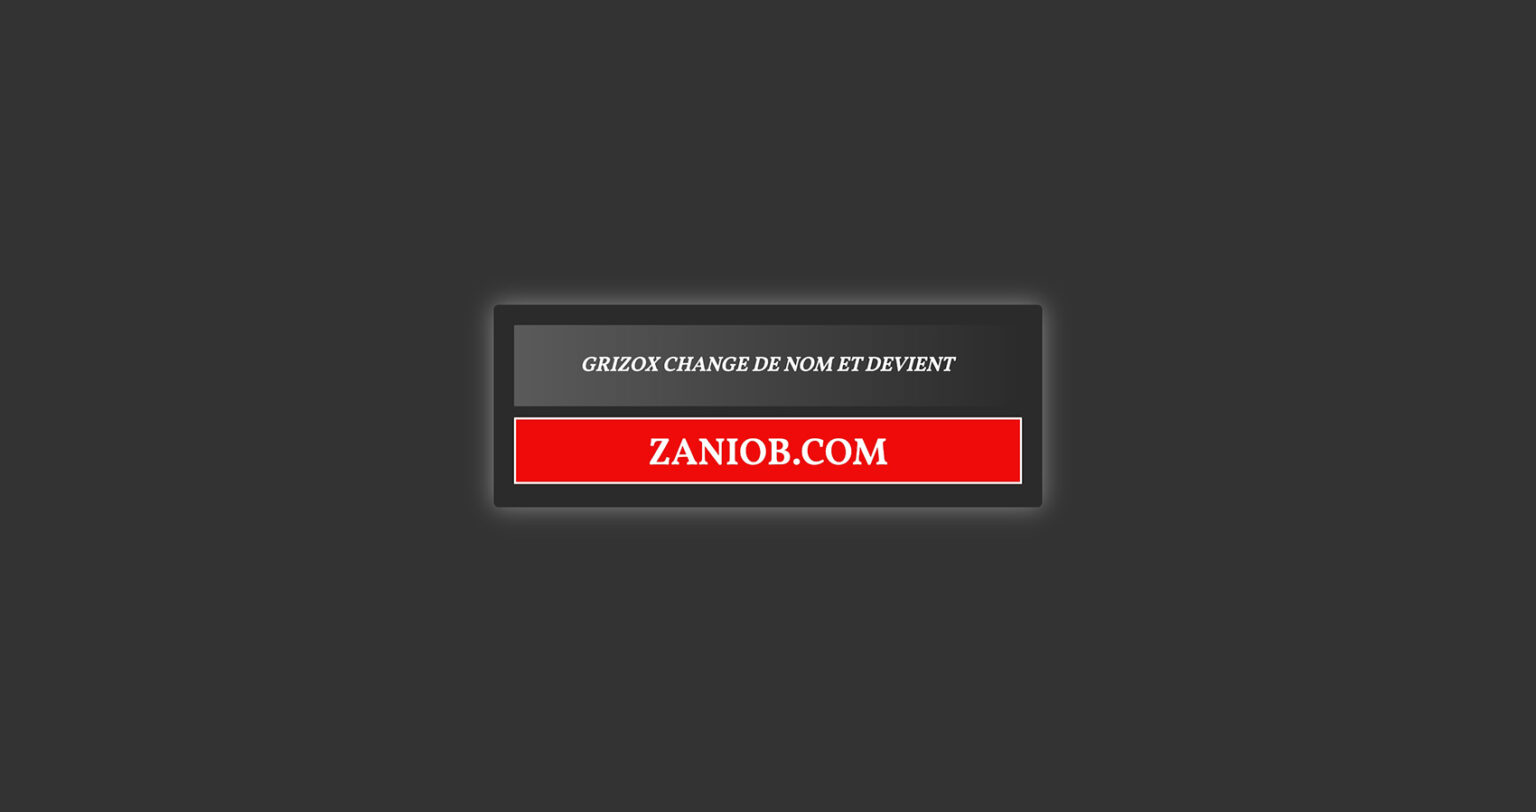 Streaming Le Site Grizox Change De Nom Et Devient Zaniob Reviews